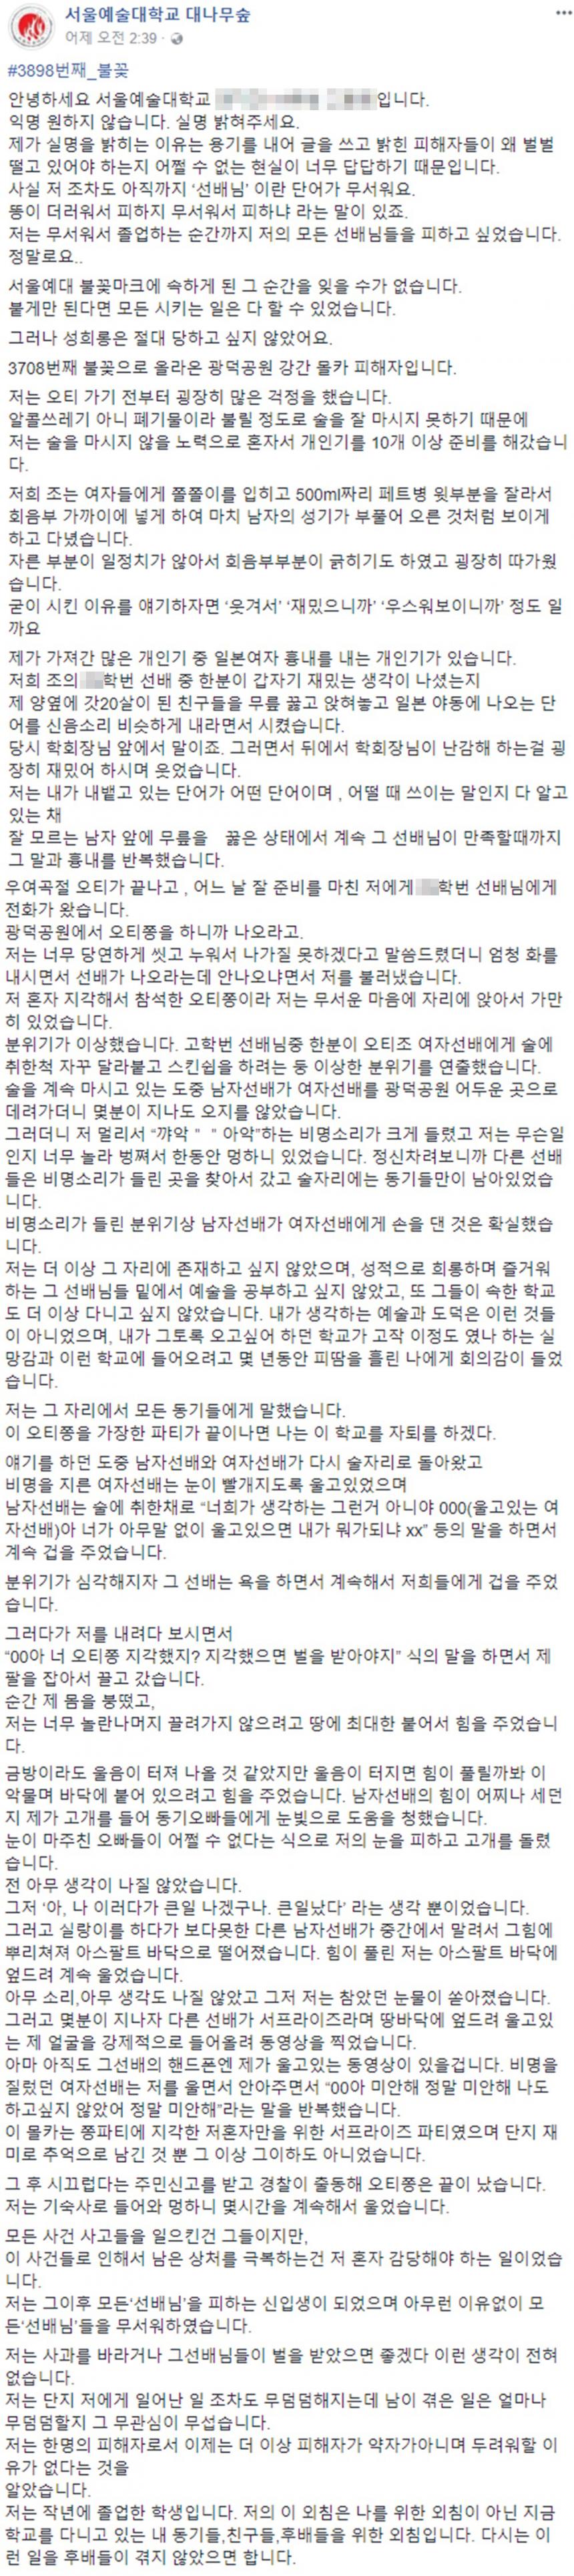 B씨 ‘미투’ 동참 글 / 서울예술대학교 대나무숲 페이스북